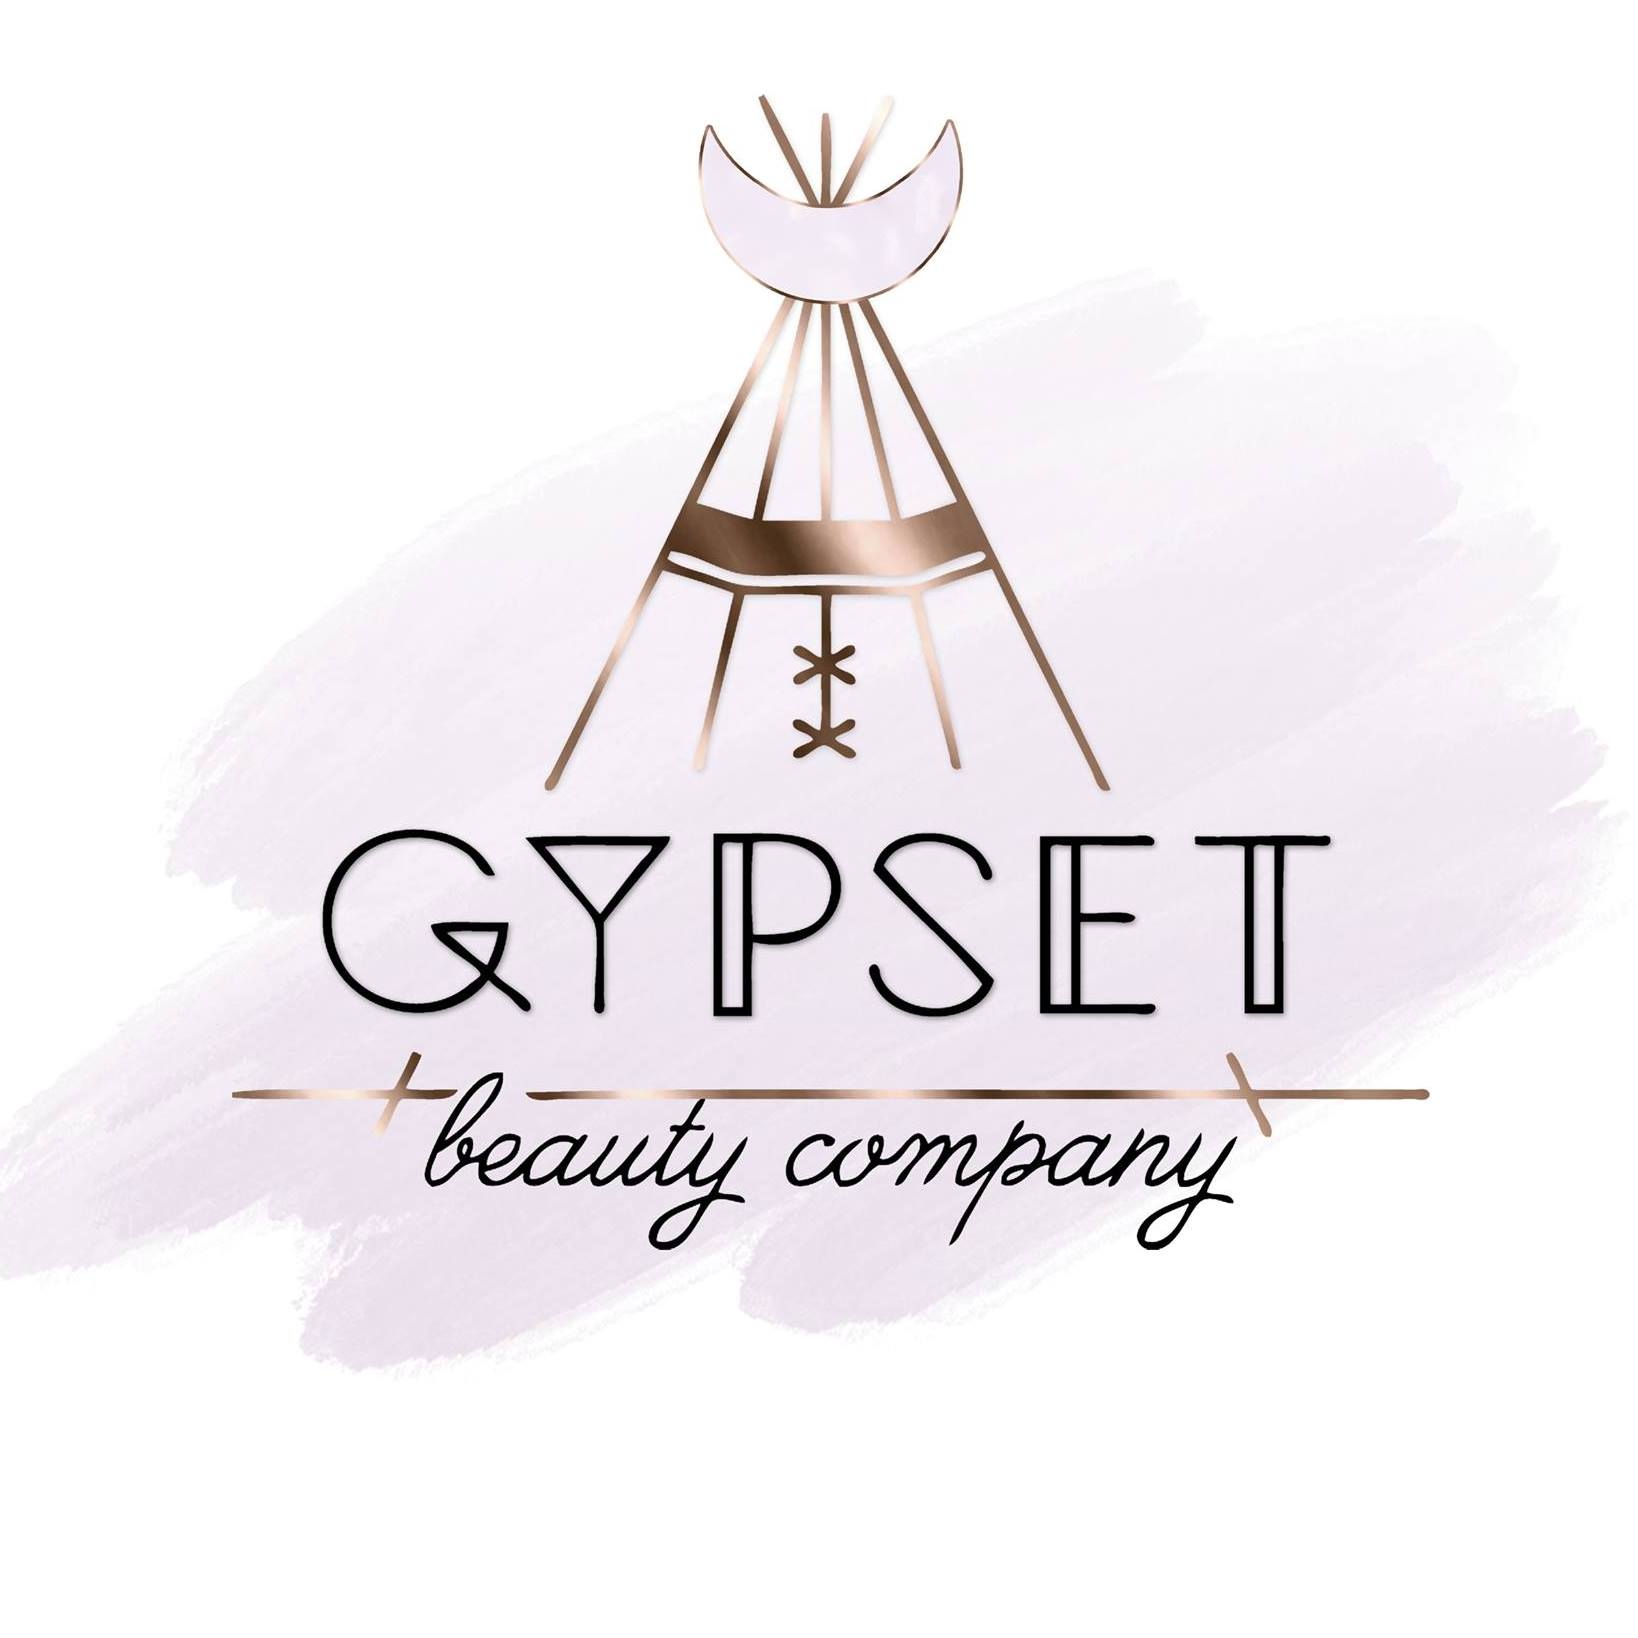 Company logo of Gypset Beauty Company